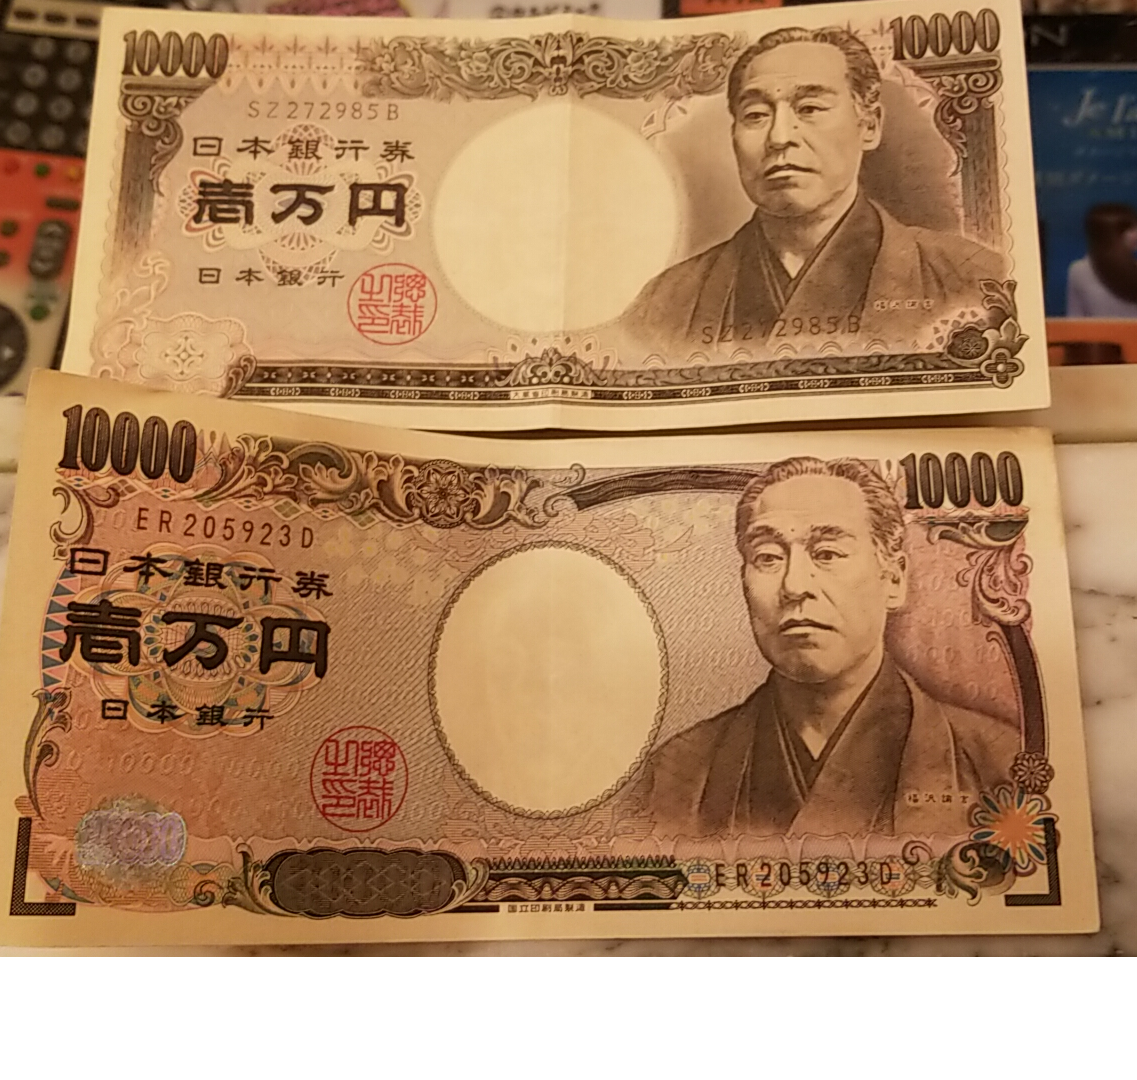 偽札 諭吉の旧一万円札 中堅マネージャの表と裏